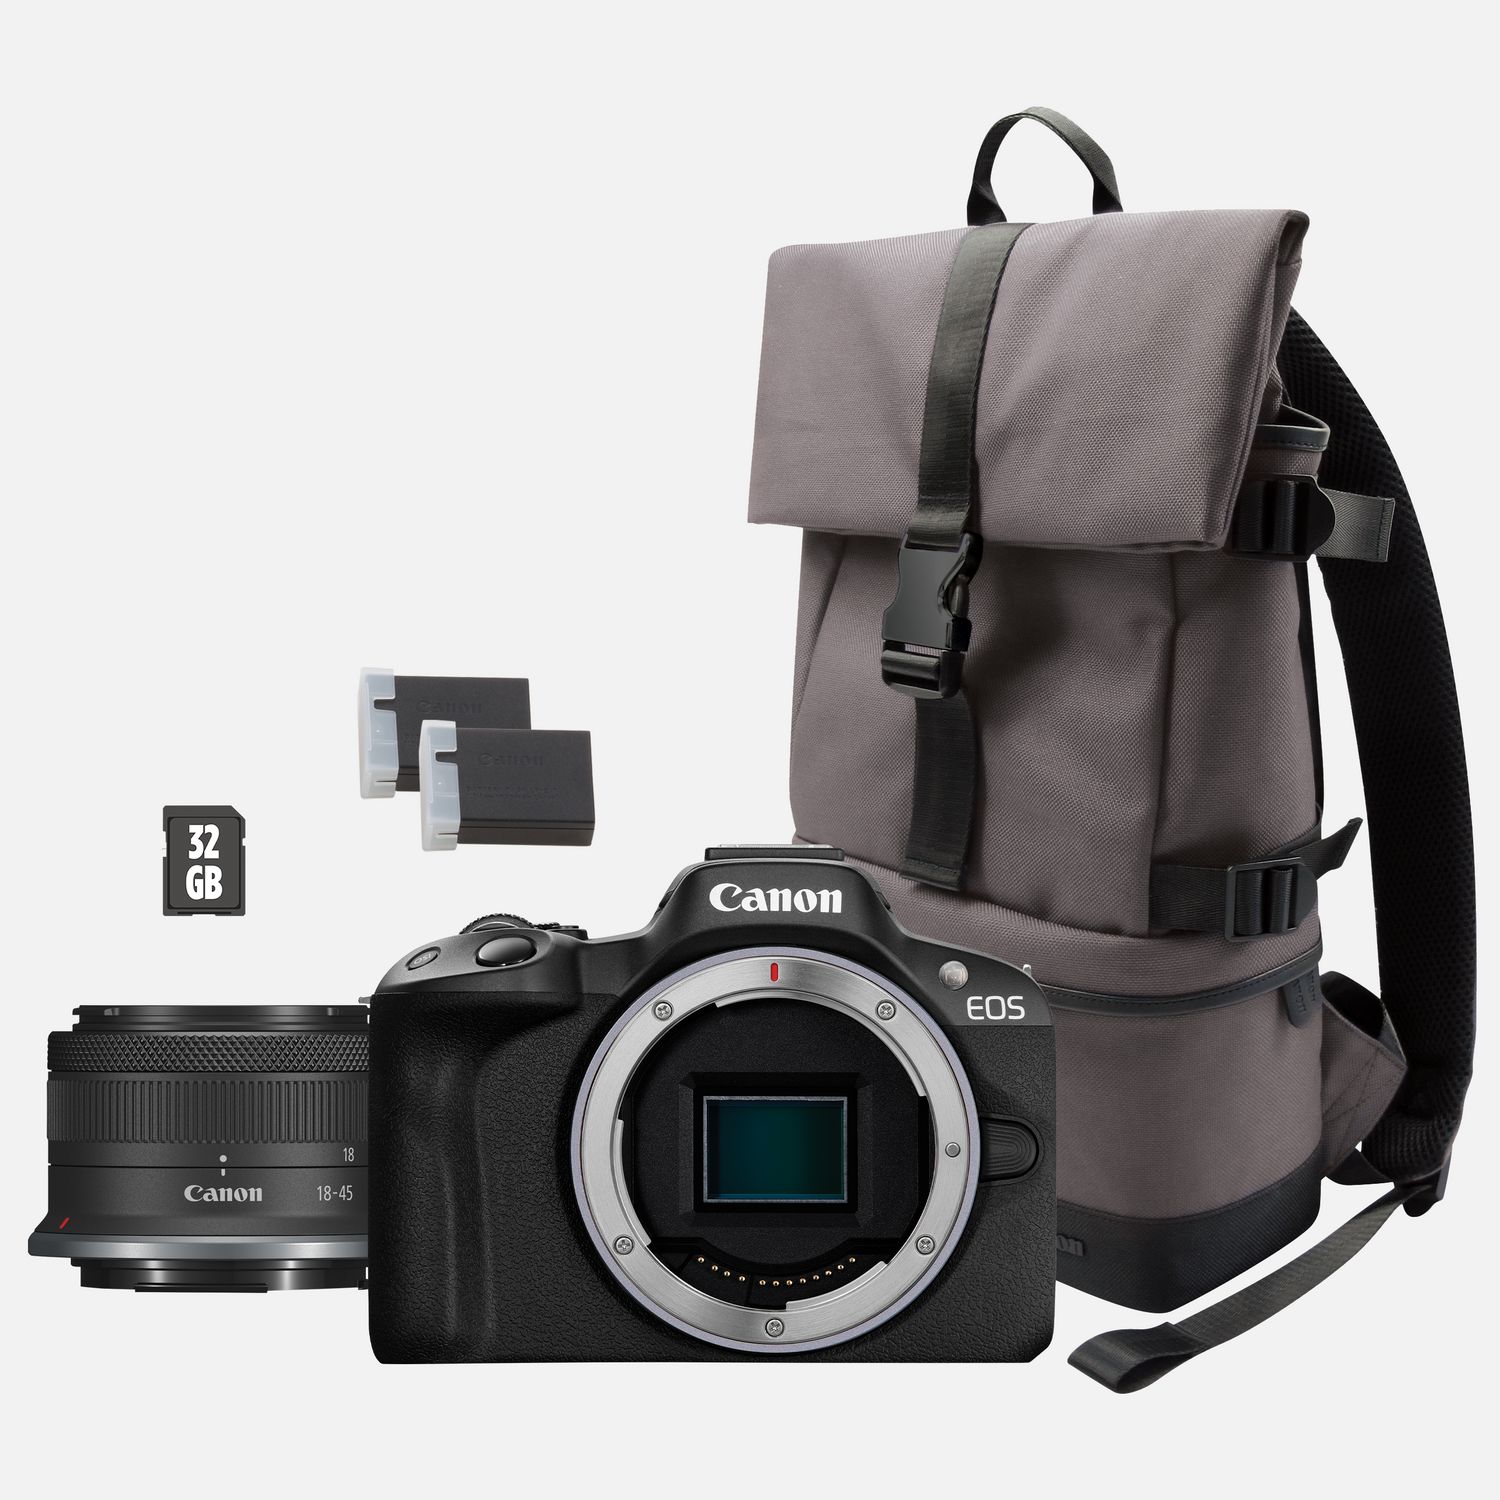 Buy Canon EOS SD-Karte 18-45mm + RF-S spiegellose + WLAN-Kameras F4.5-6.3 Ersatzakku IS — in STM + Schweiz Kamera, + Rucksack Canon Shop Schwarz R50